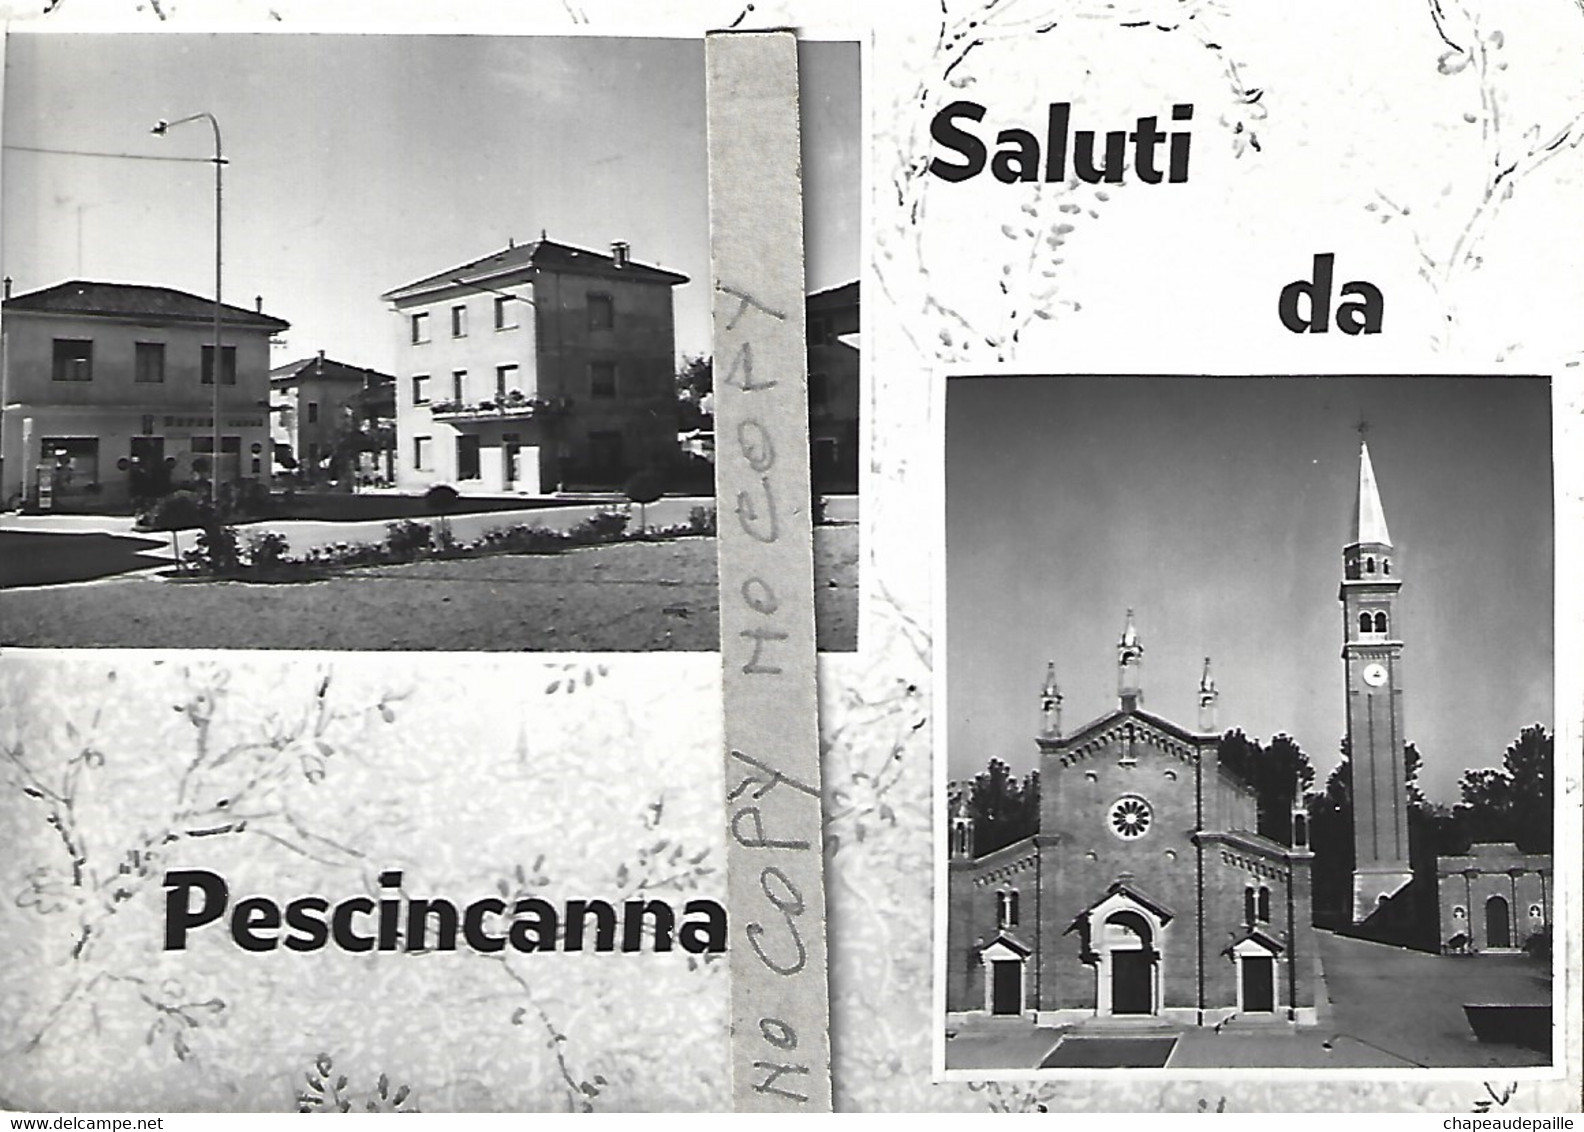 Saluti Da Pescincanna - Udine